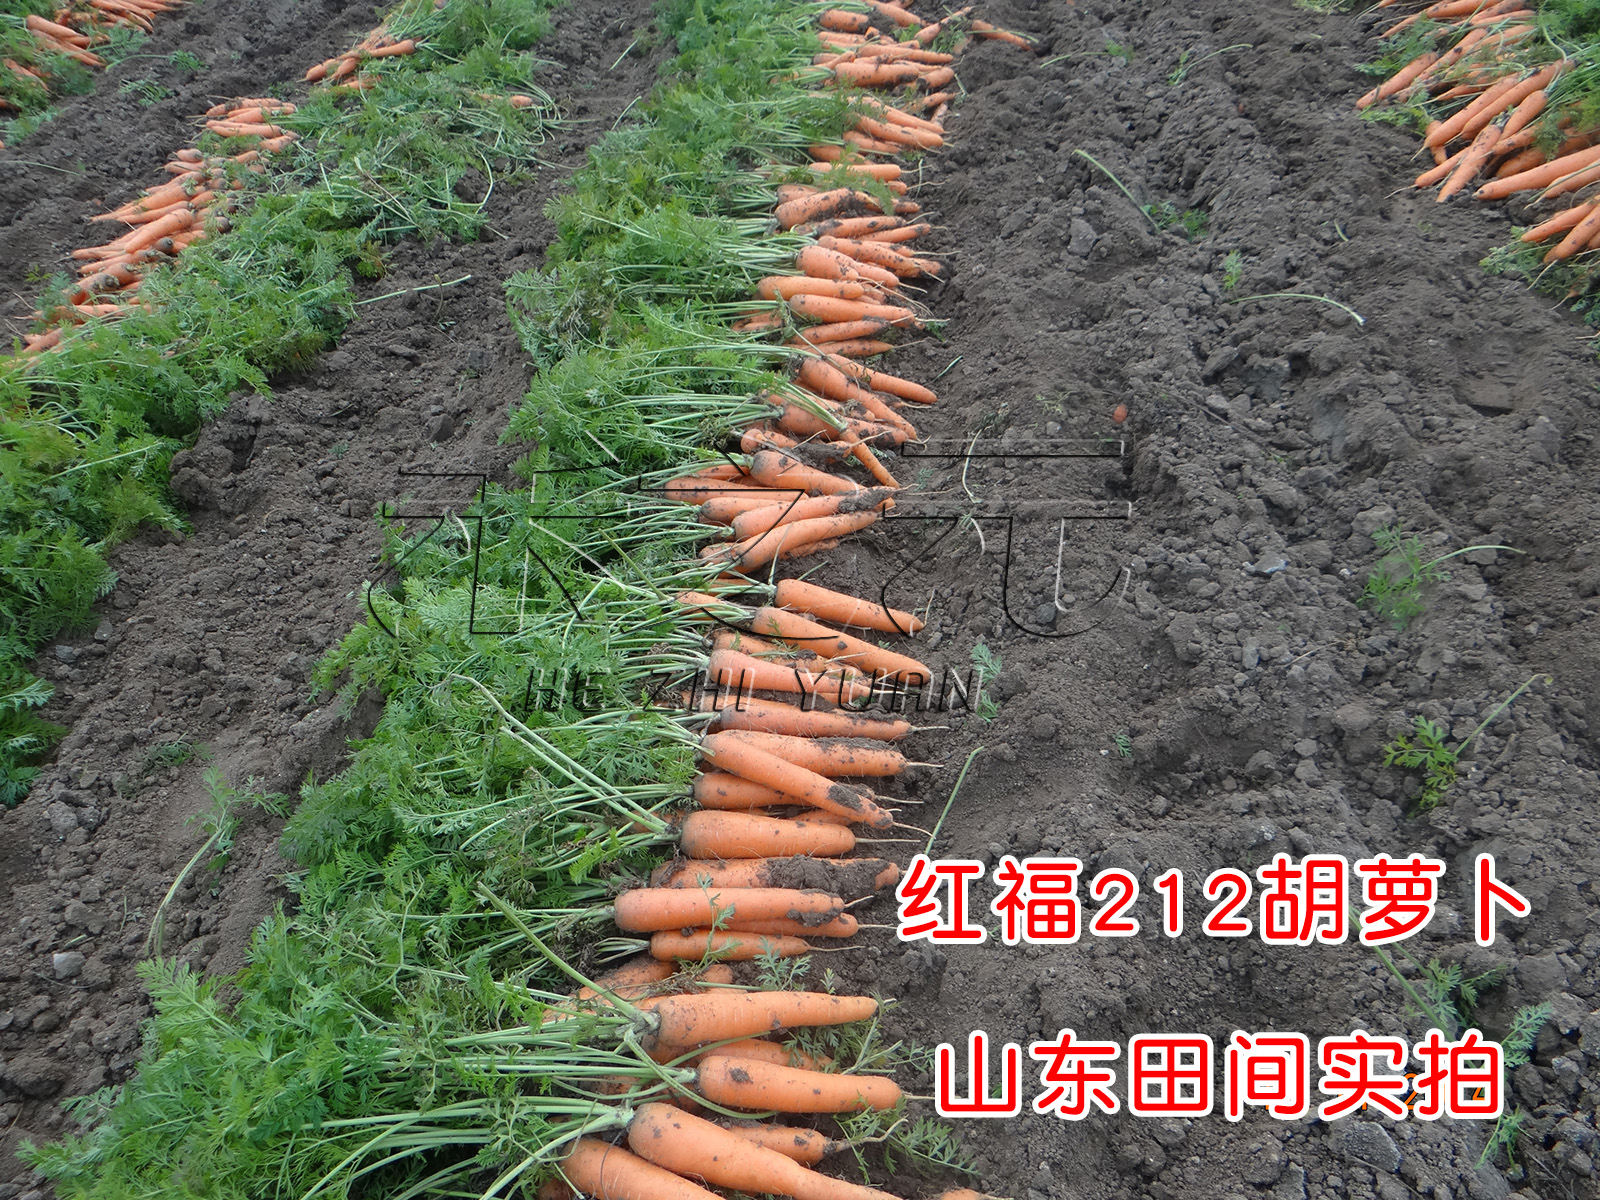 红福212胡萝卜种子春播秋六寸胡萝卜老水果蔬菜种孑秋季大禾之元 - 图1